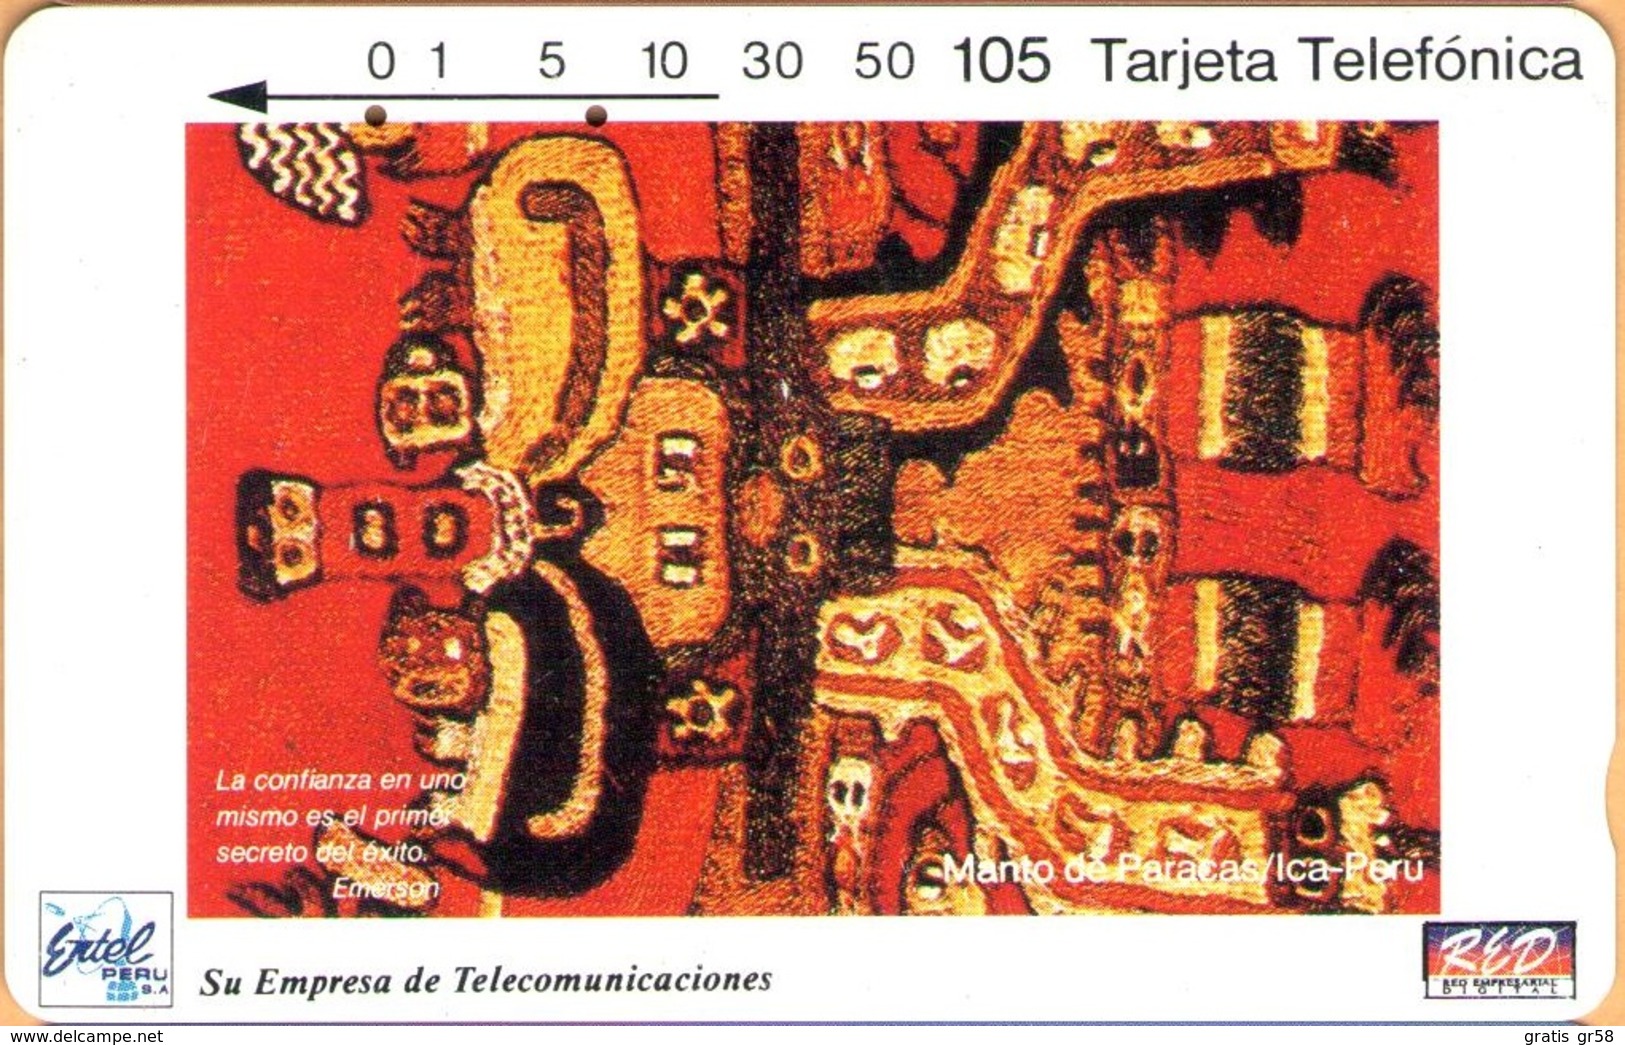 Peru - PE-M1A, Entel/RED, Segunda Serie Enero/94, Tamura, Manto Paracas, 105 U, 10.000ex, 1994, Used - Pérou